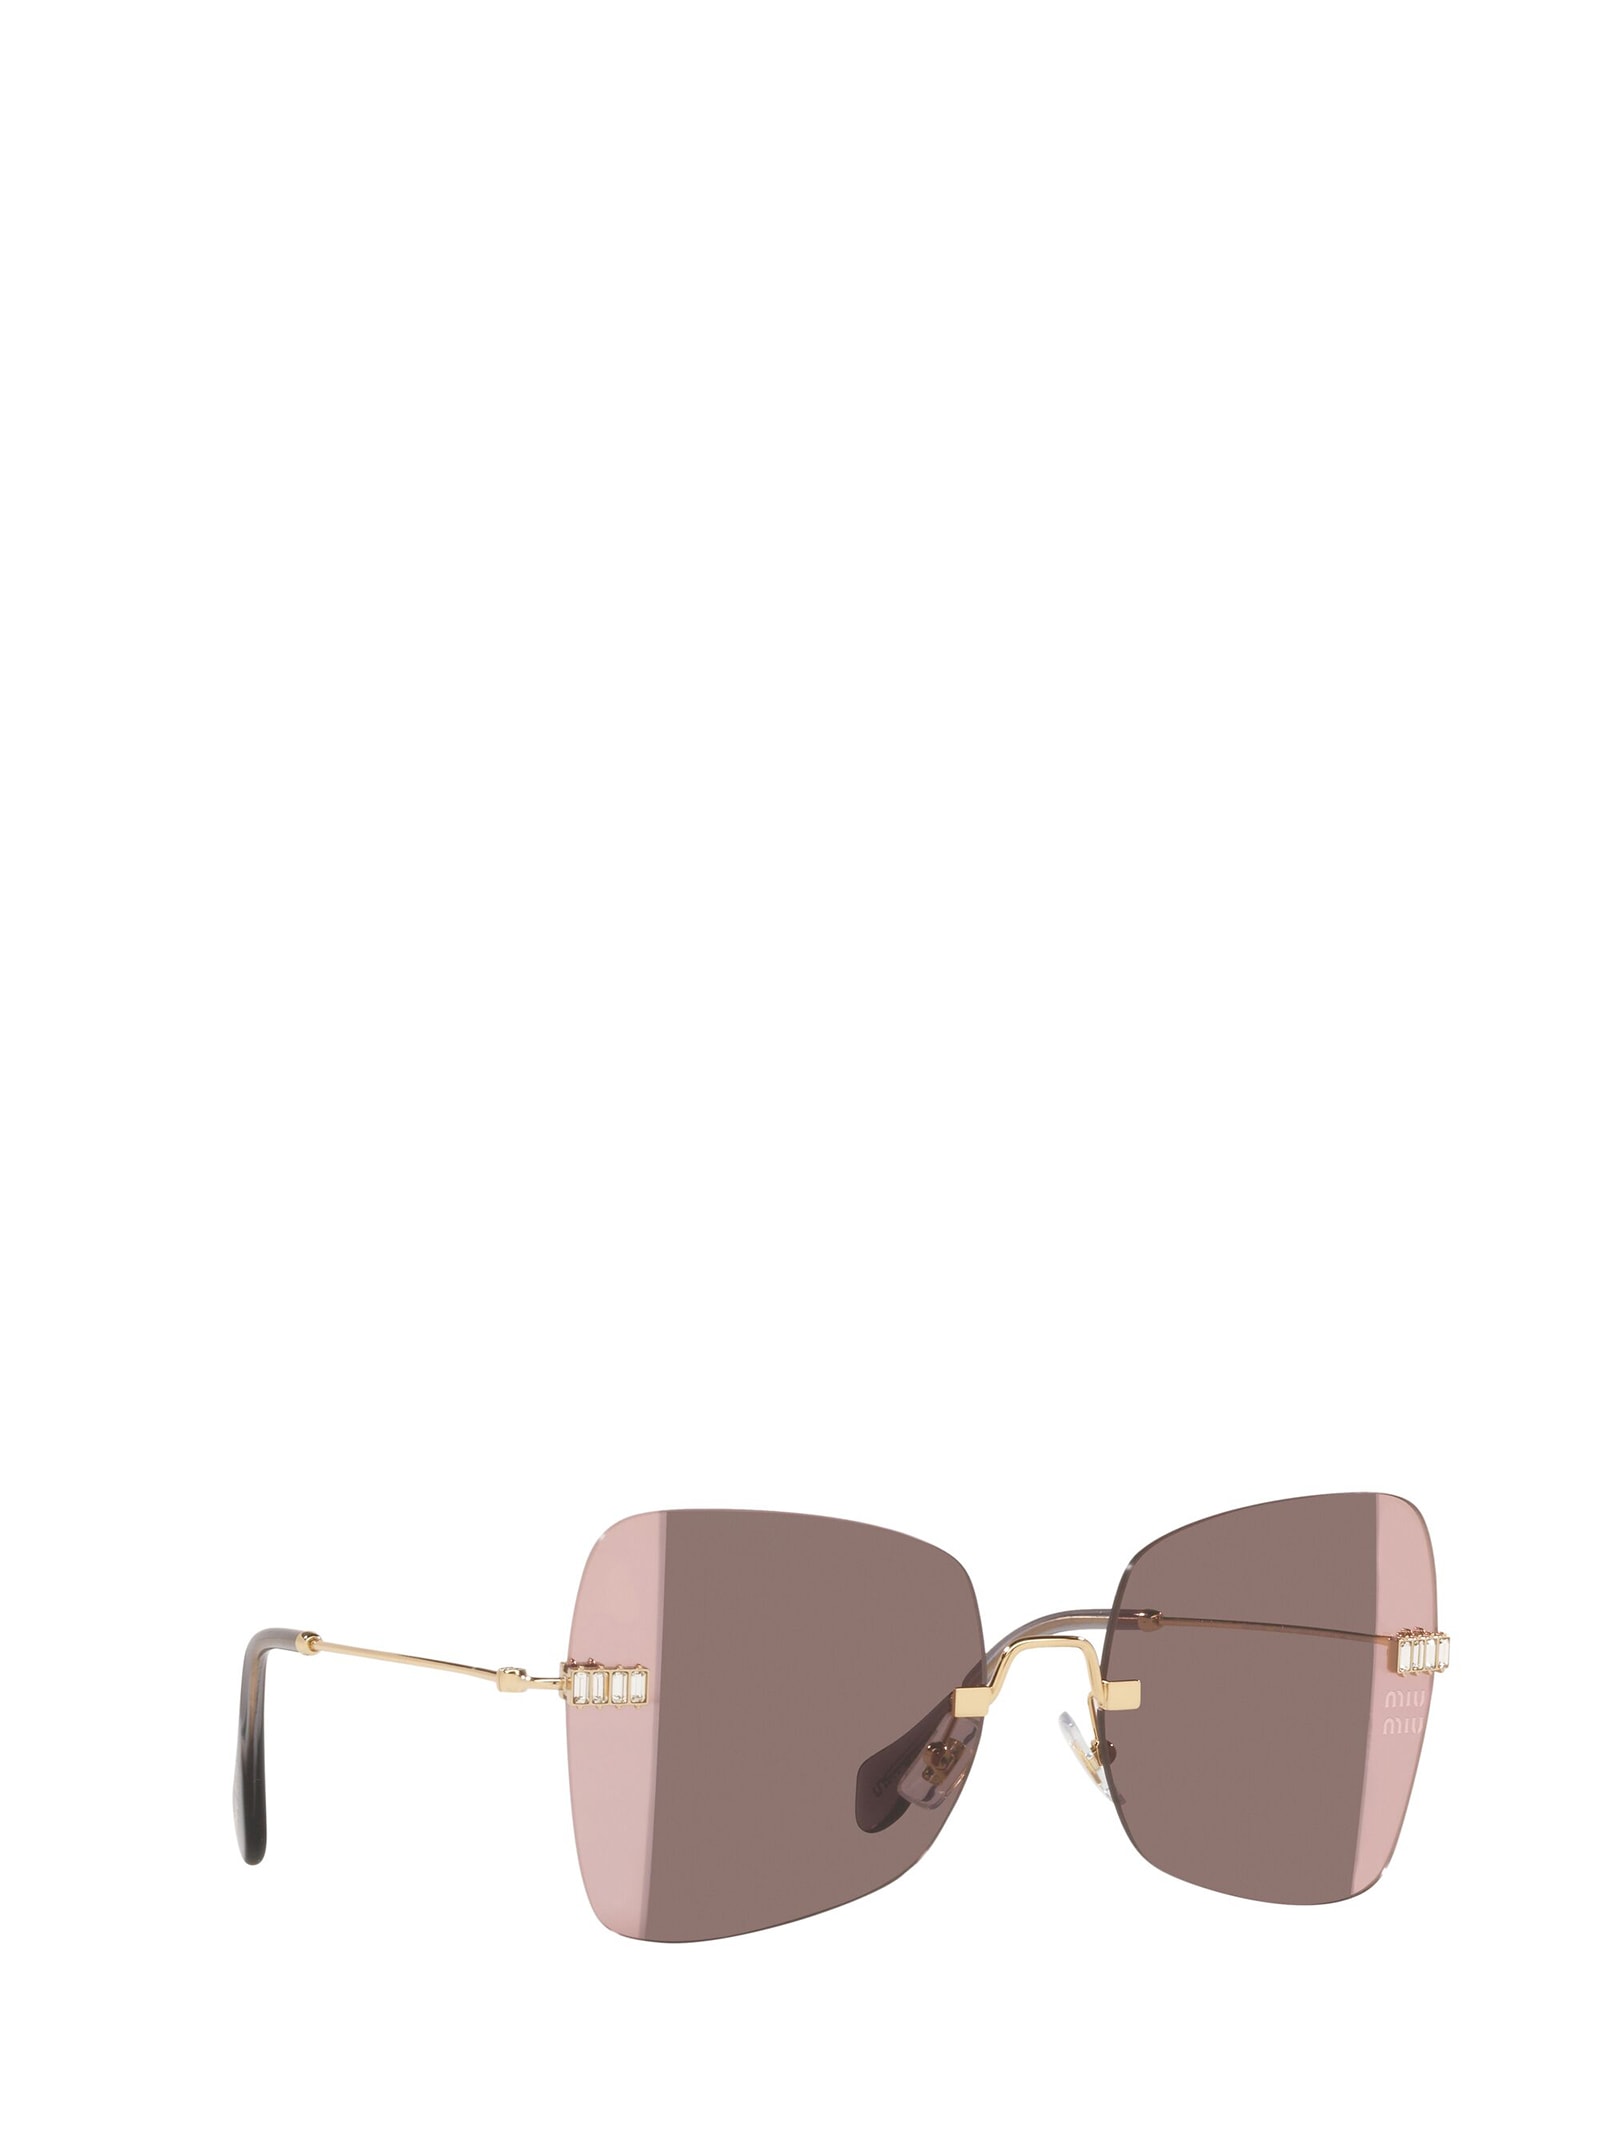 Miu Miu Mu 50ws Pale Gold Female Sunglasses | ModeSens